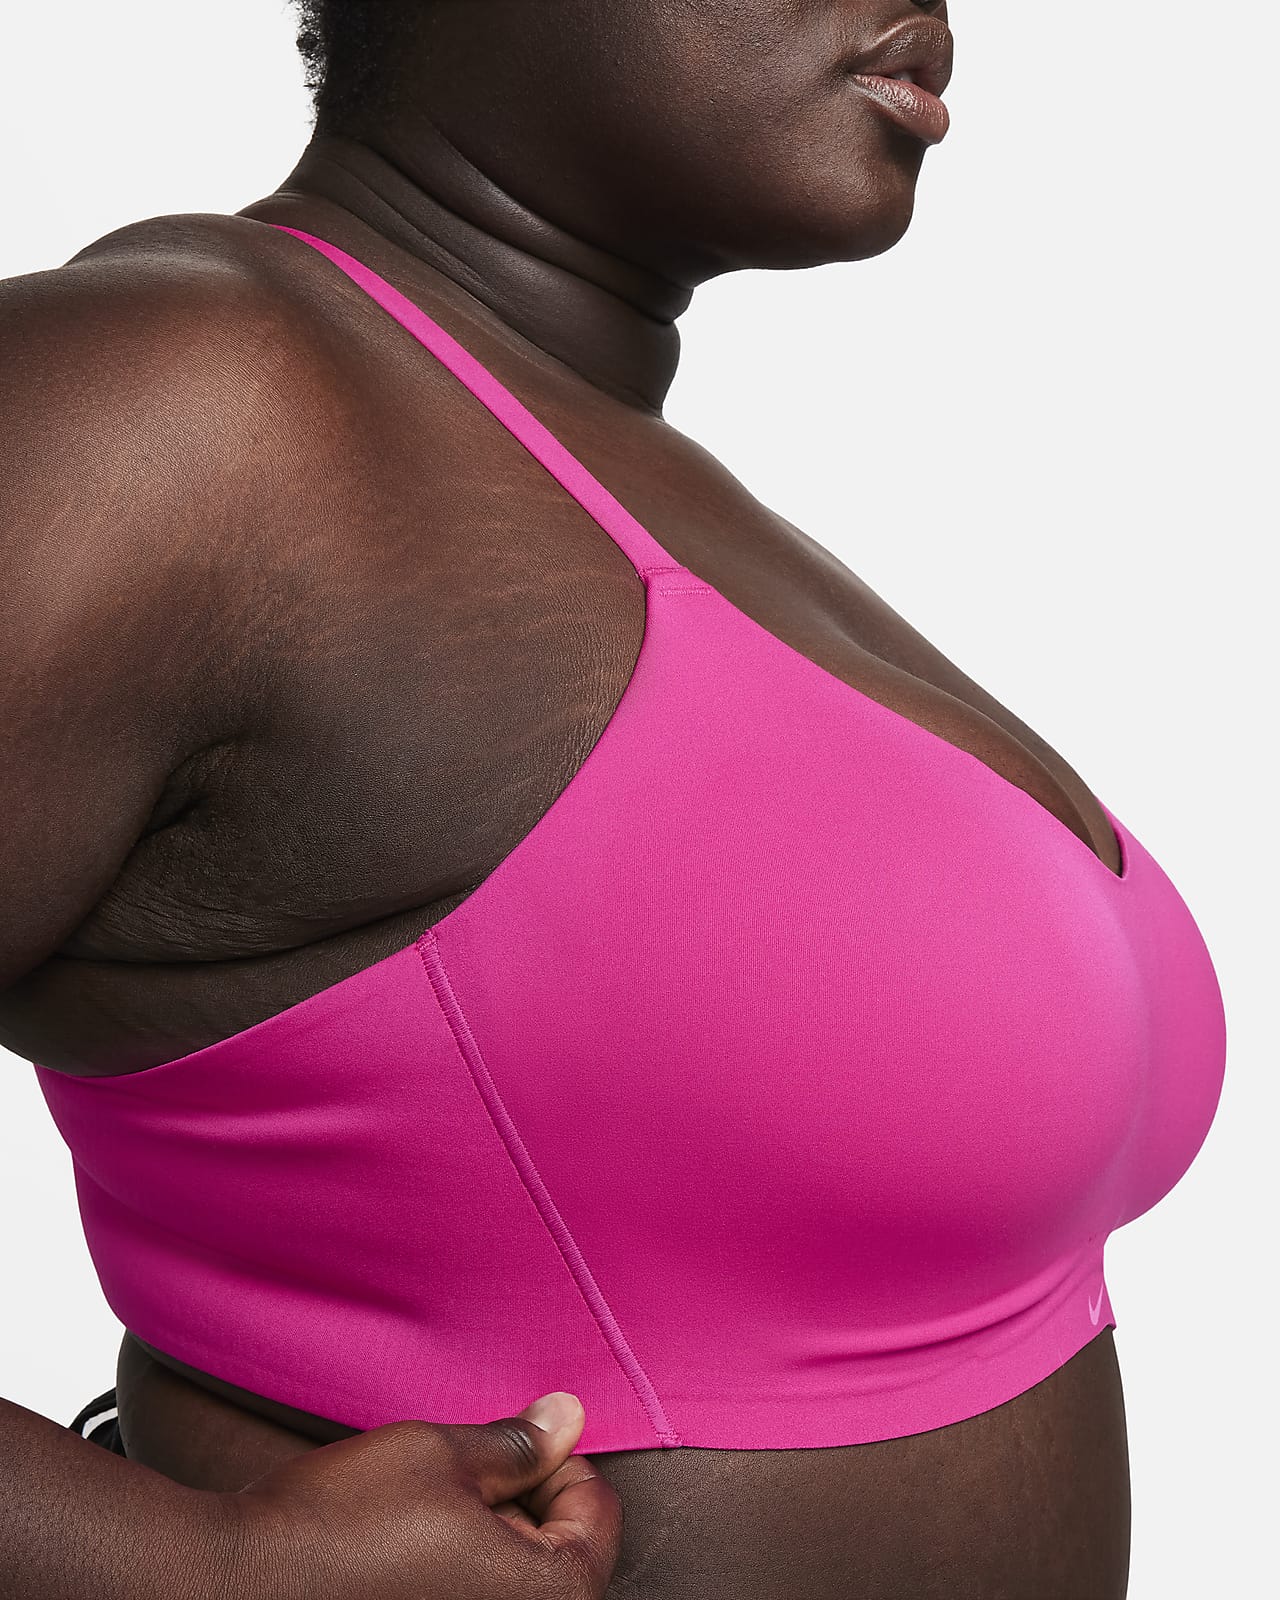 Nike Training Alate Minimalist Dri-FIT light support sports bra in